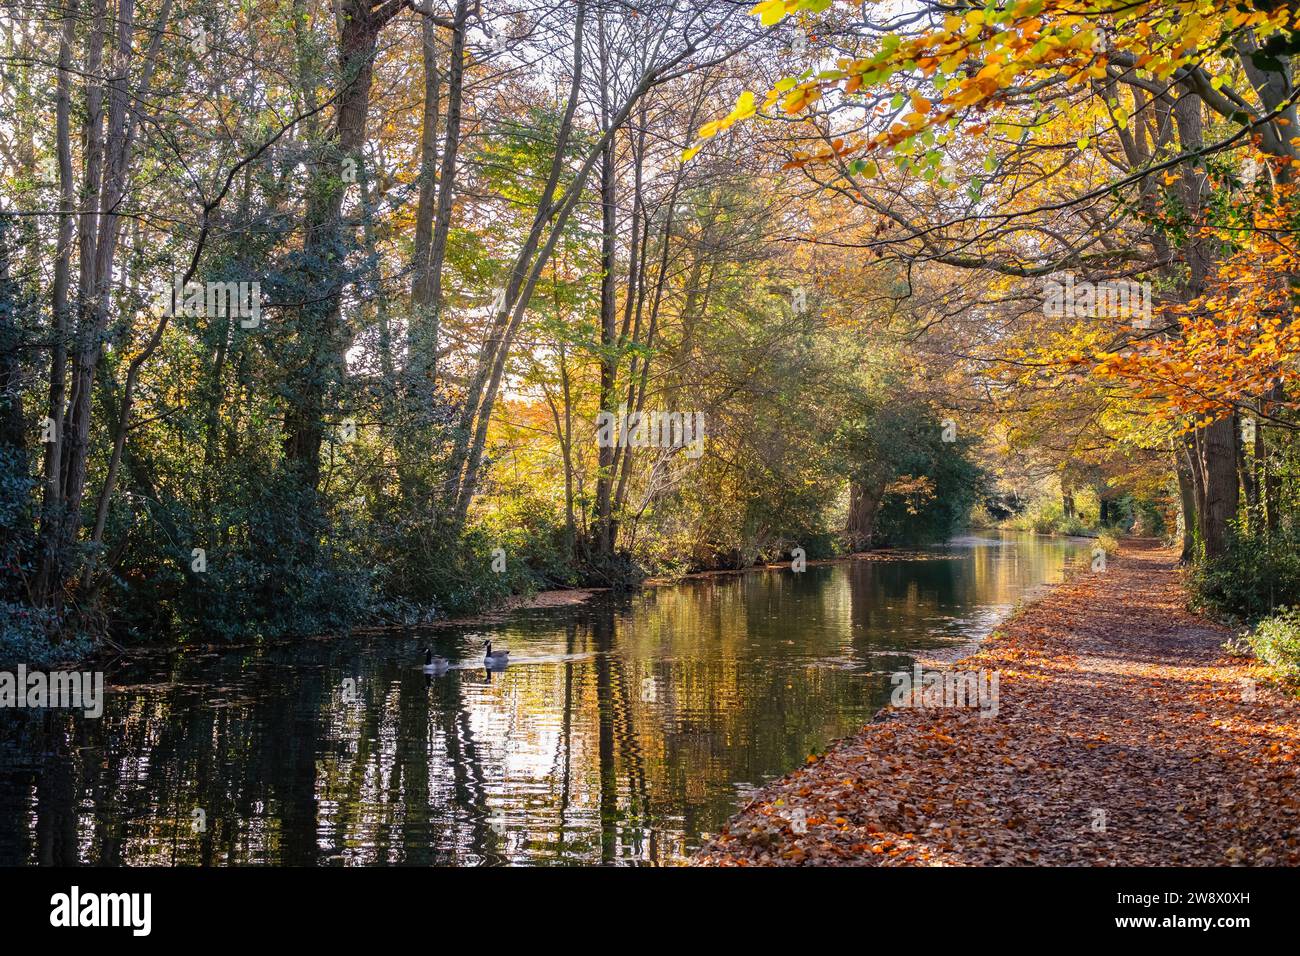 Vue le long du chemin de halage le long du canal de Basingstoke en automne. Mytchette, Surrey, Angleterre, Royaume-Uni, Grande-Bretagne Banque D'Images